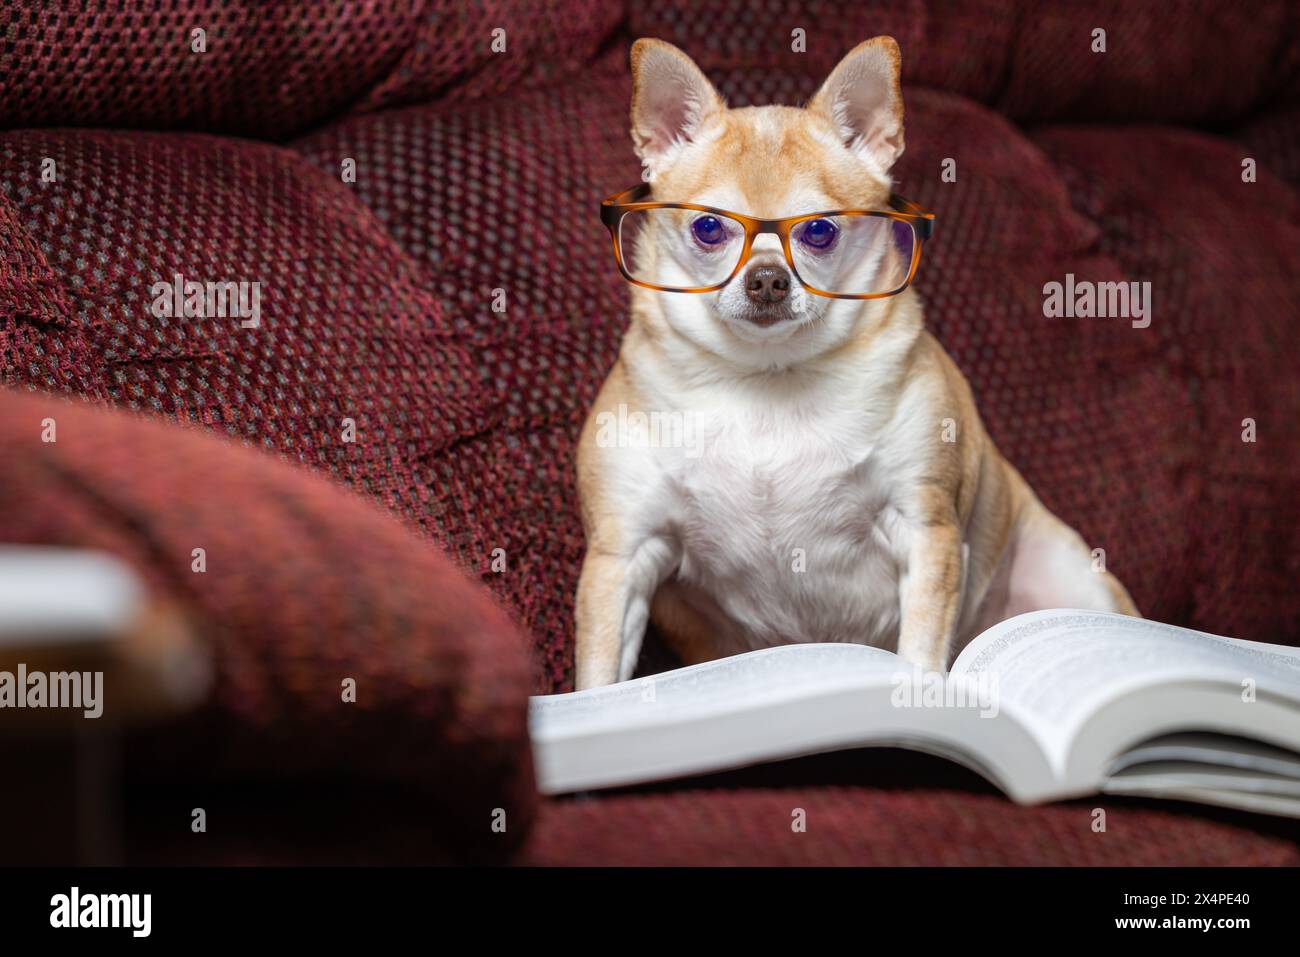 Ein kleiner chihuahua sitzt auf einer Couch mit einem Buch davor. Der Hund trägt eine Brille und liest das Buch. Die Szene ist verspielt und li Stockfoto